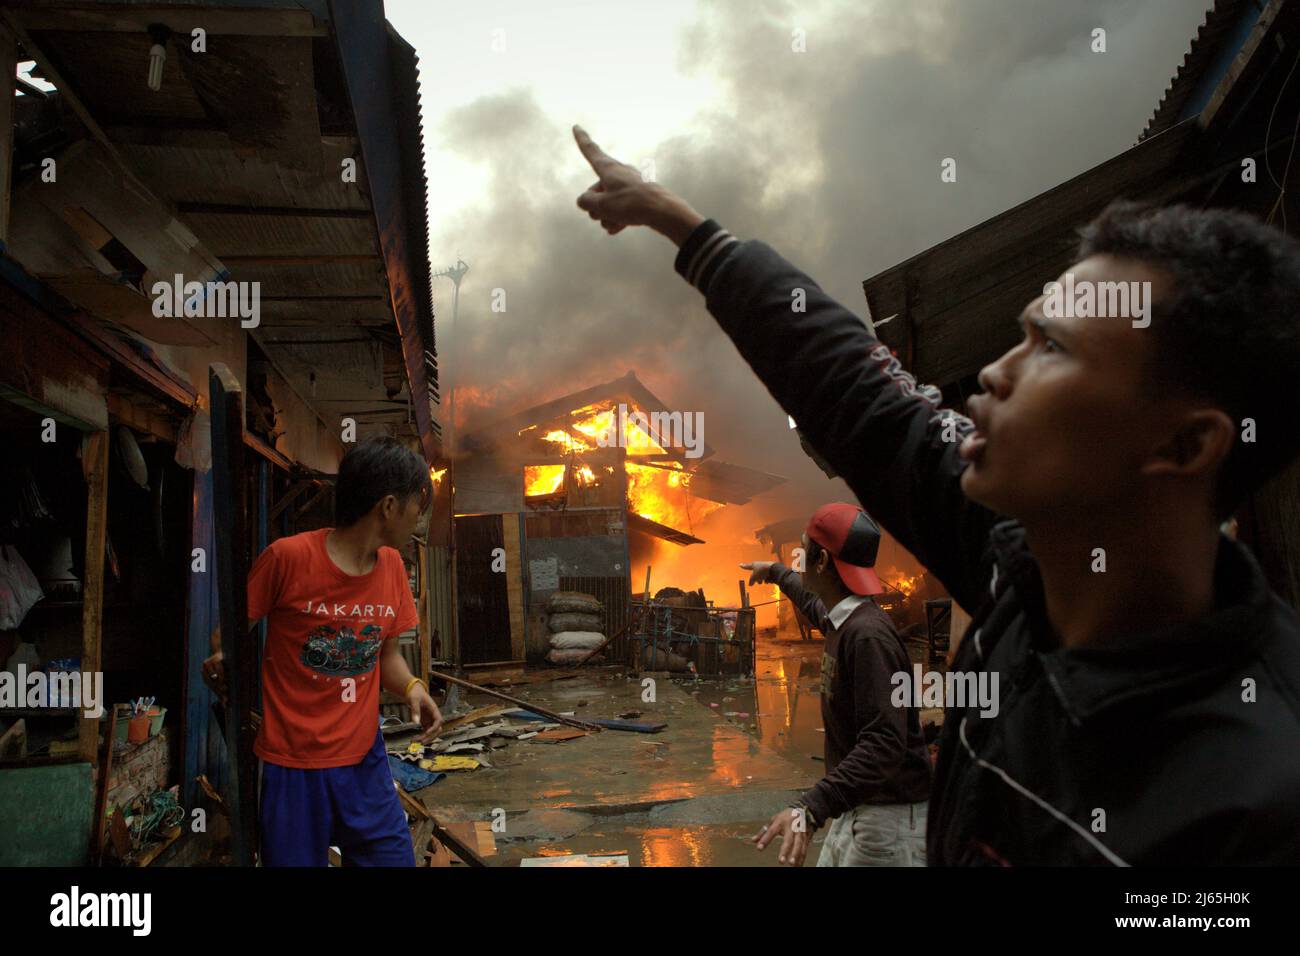 Bewohner koordinieren sich, während sie versuchen, bei der Brandbekämpfung zu helfen, da ein Feuerunfall in einem dichten Viertel in Penjaringan, Nord-Jakarta, Jakarta, Indonesien, brennt. Im Zeitraum von zehn Jahren (2011-2020) kamen 269 Menschen durch Brandunfälle ums Leben – durchschnittlich 26,9 pro Jahr. Es gab 164 Fälle von Feuerwehrleuten, die bei Löscharbeiten verletzt wurden. Ein Feuerwehrmann verlor im gleichen Zeitraum das Leben. Stockfoto